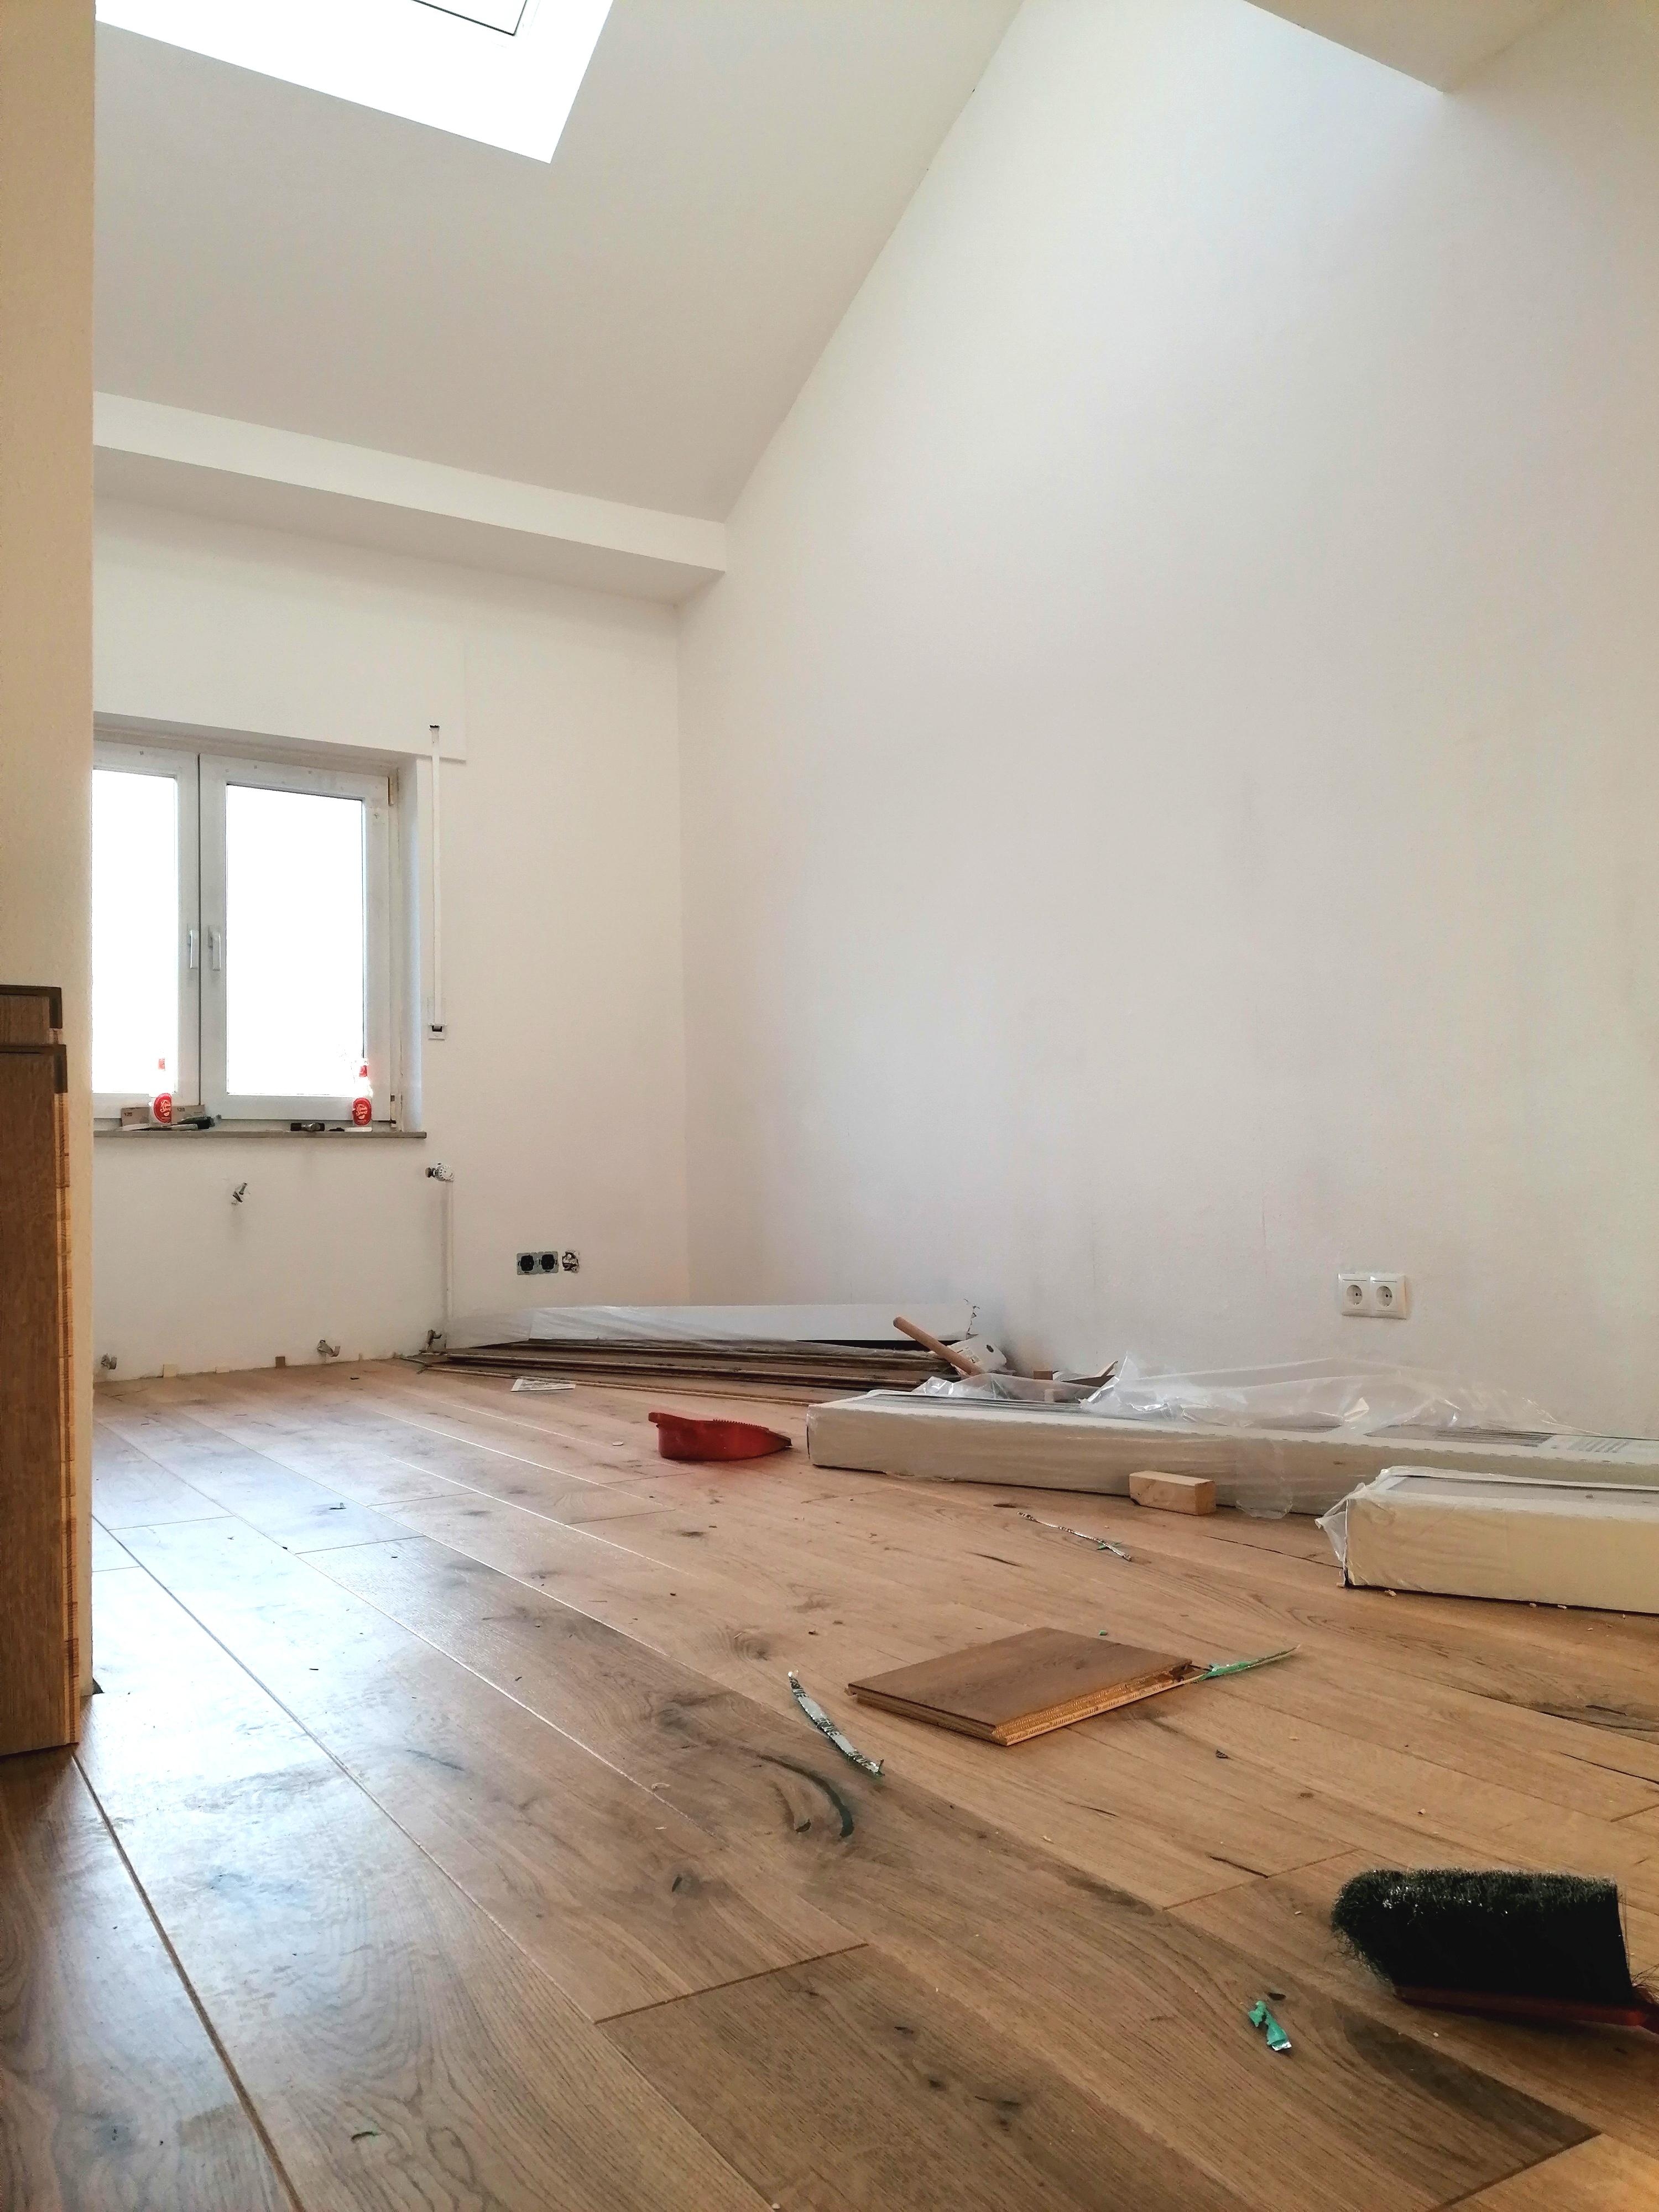 Die letzte Baustelle im Haus wird endlich beendet #Renovierung #newroom #zukünftigeskinderzimmer #kidsroom #Parkettboden